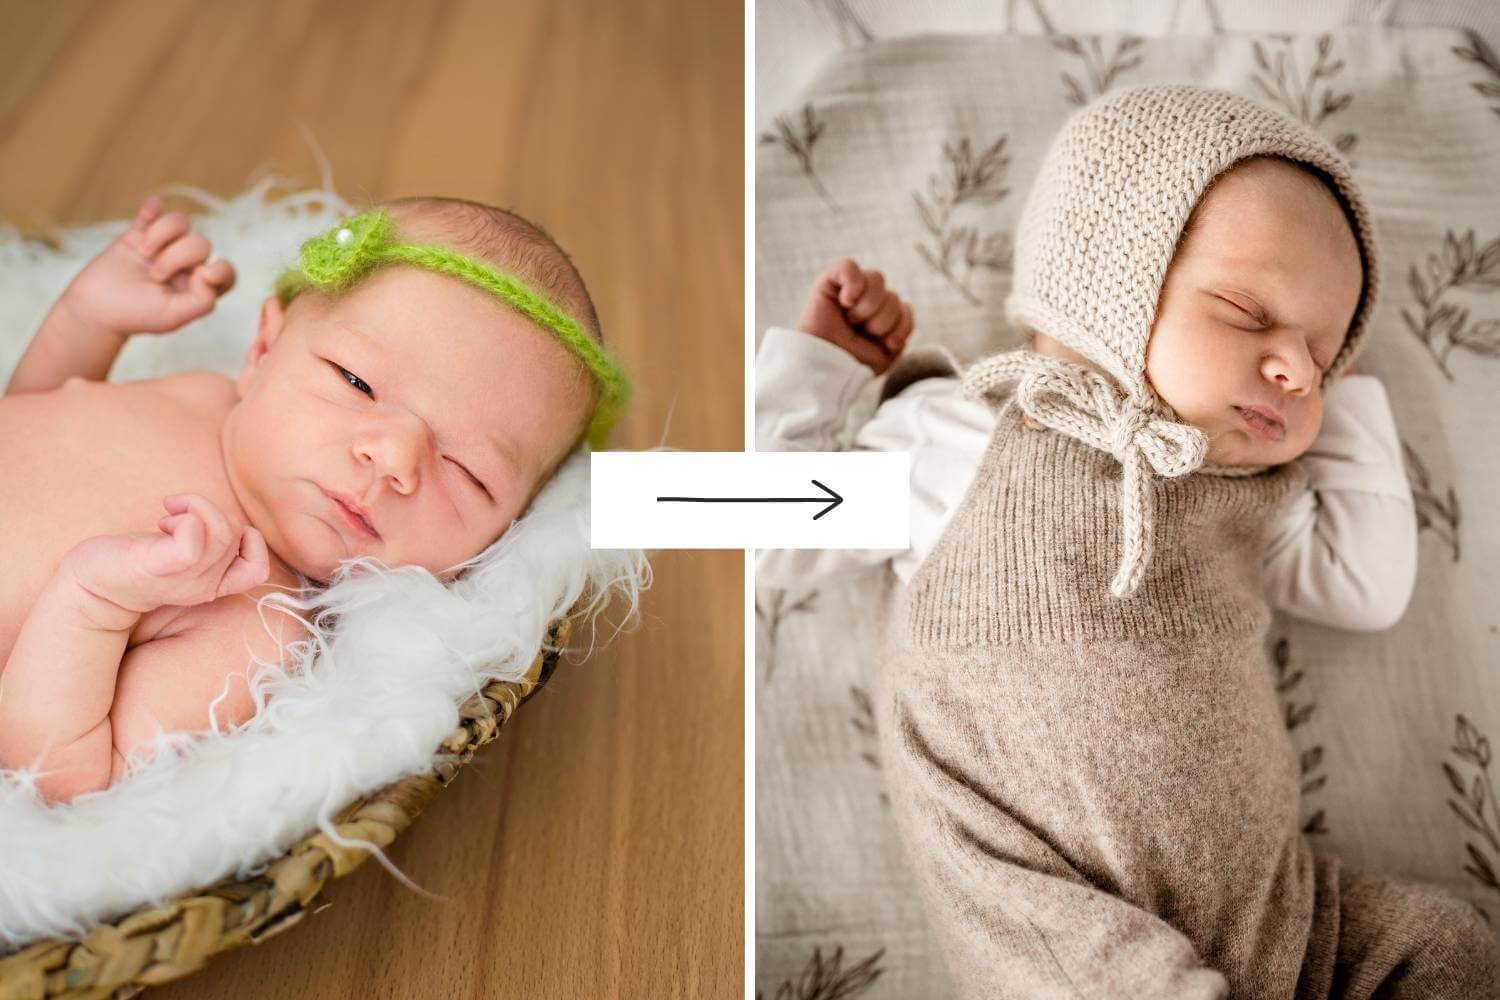 Vergleich Neugeborenenfotos 2013 versus Neugeborenenfotos heute, zwei Babys